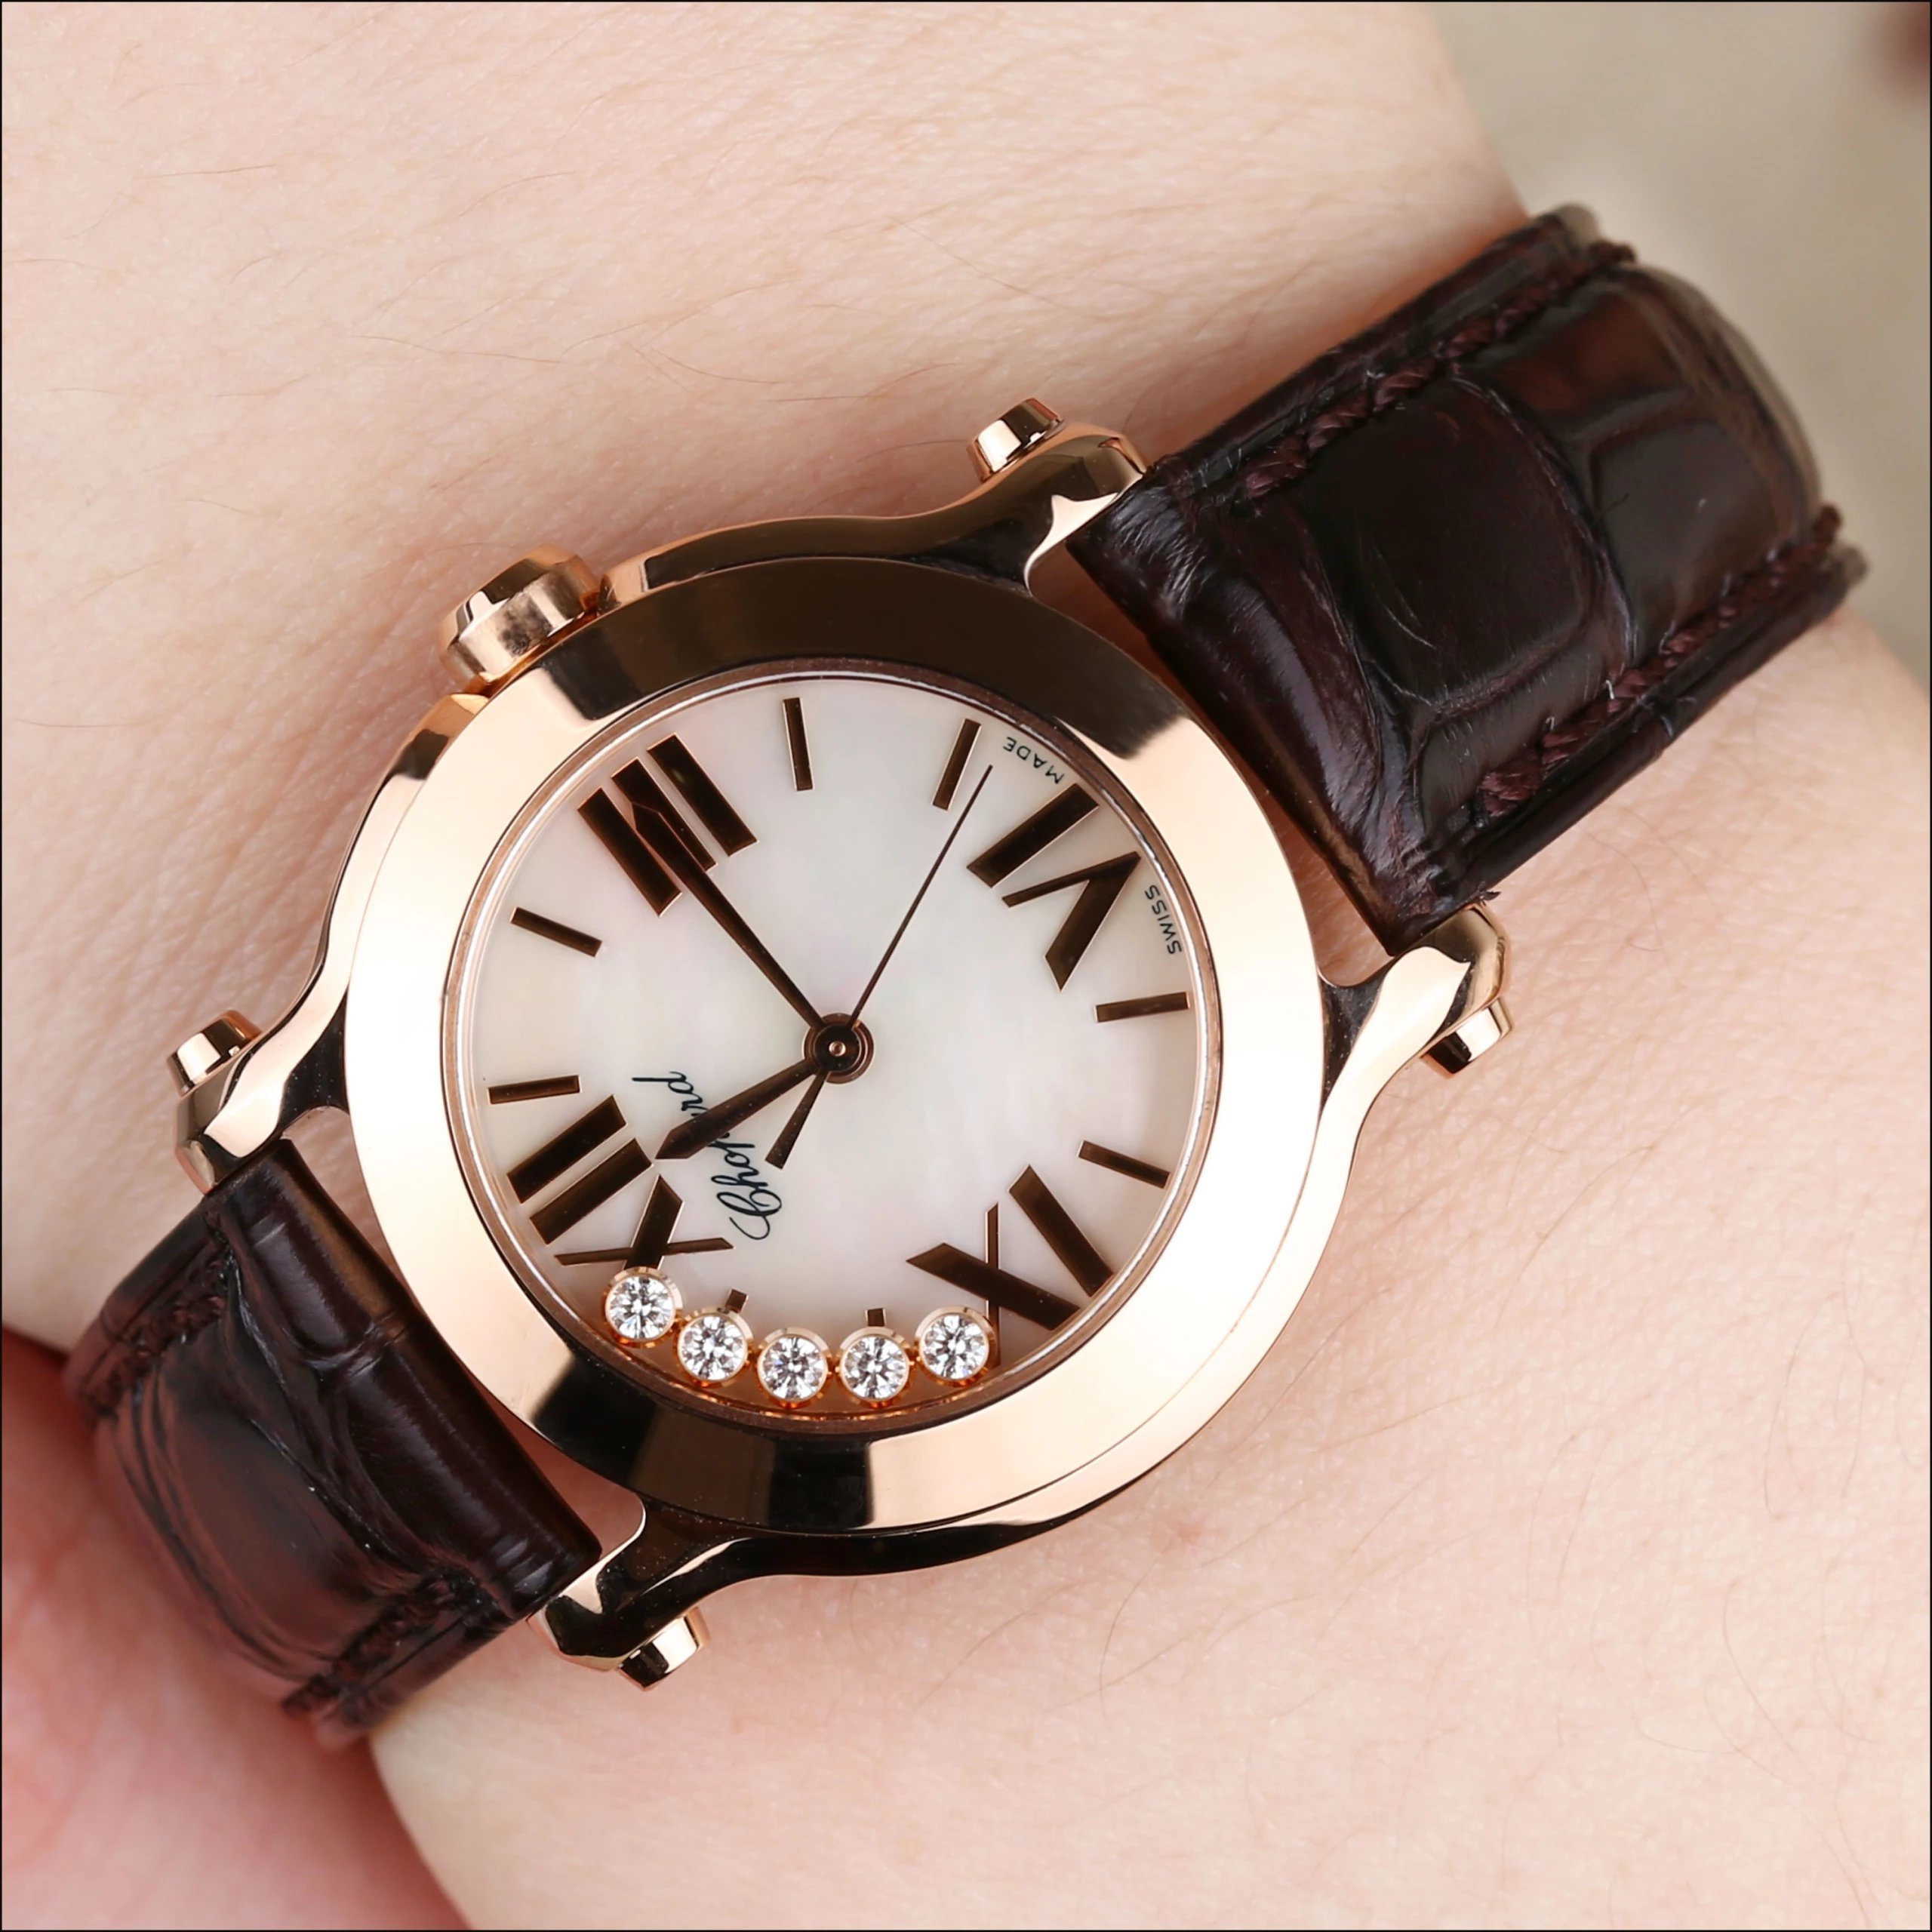 网上买复刻手表可靠吗,网上买手表哪里**多？6.上海哪里有萧邦手表店？